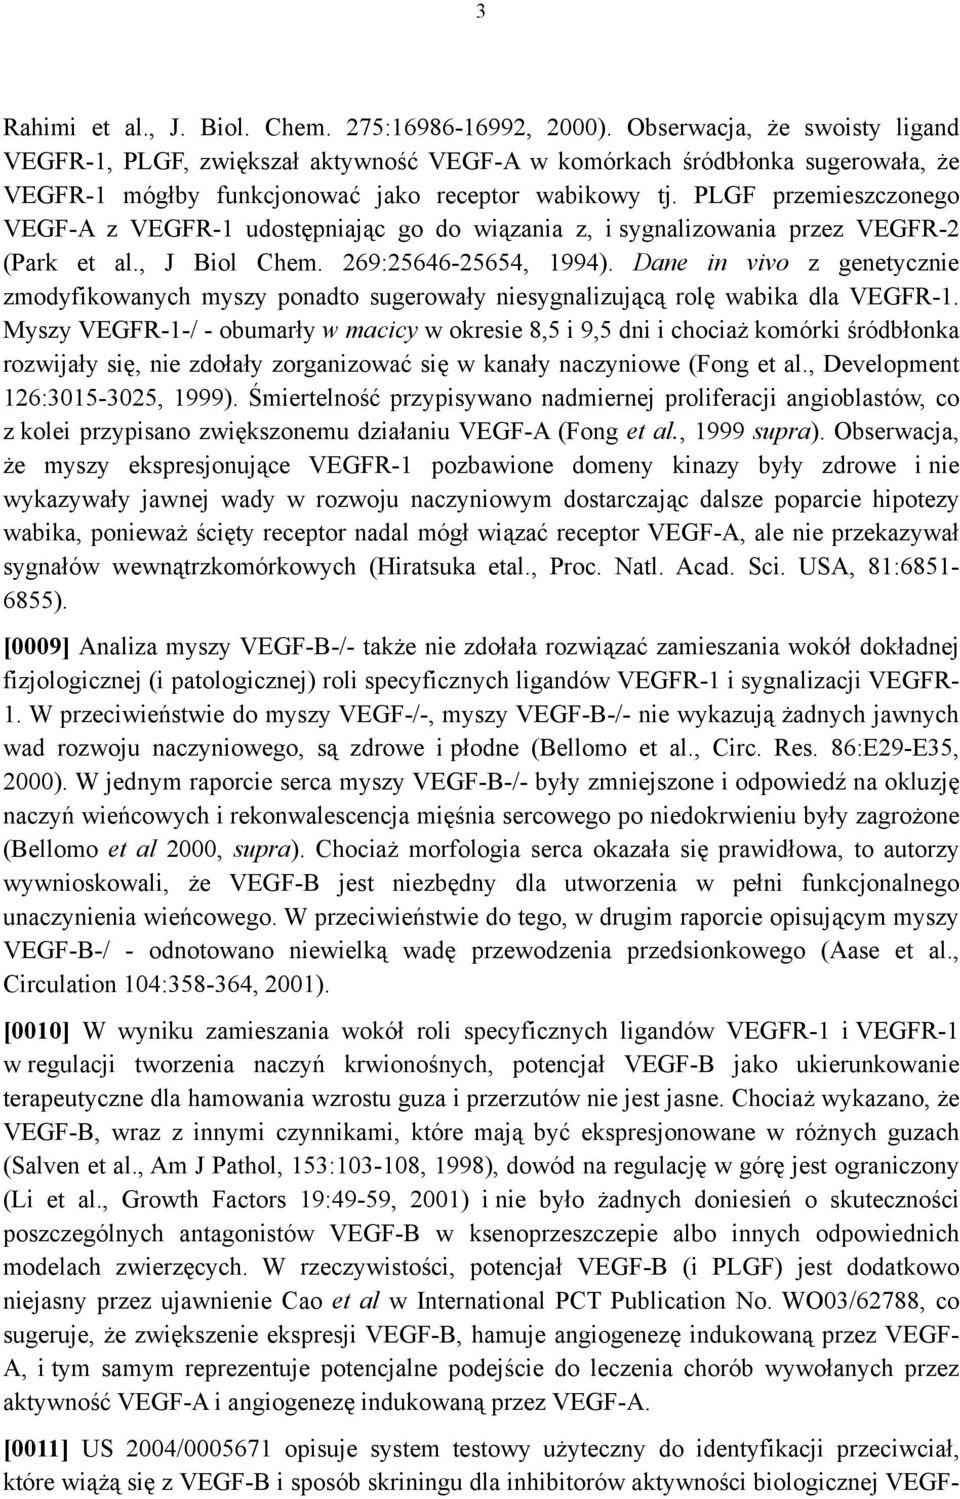 PLGF przemieszczonego VEGF-A z VEGFR-1 udostępniając go do wiązania z, i sygnalizowania przez VEGFR-2 (Park et al., J Biol Chem. 269:25646-25654, 1994).